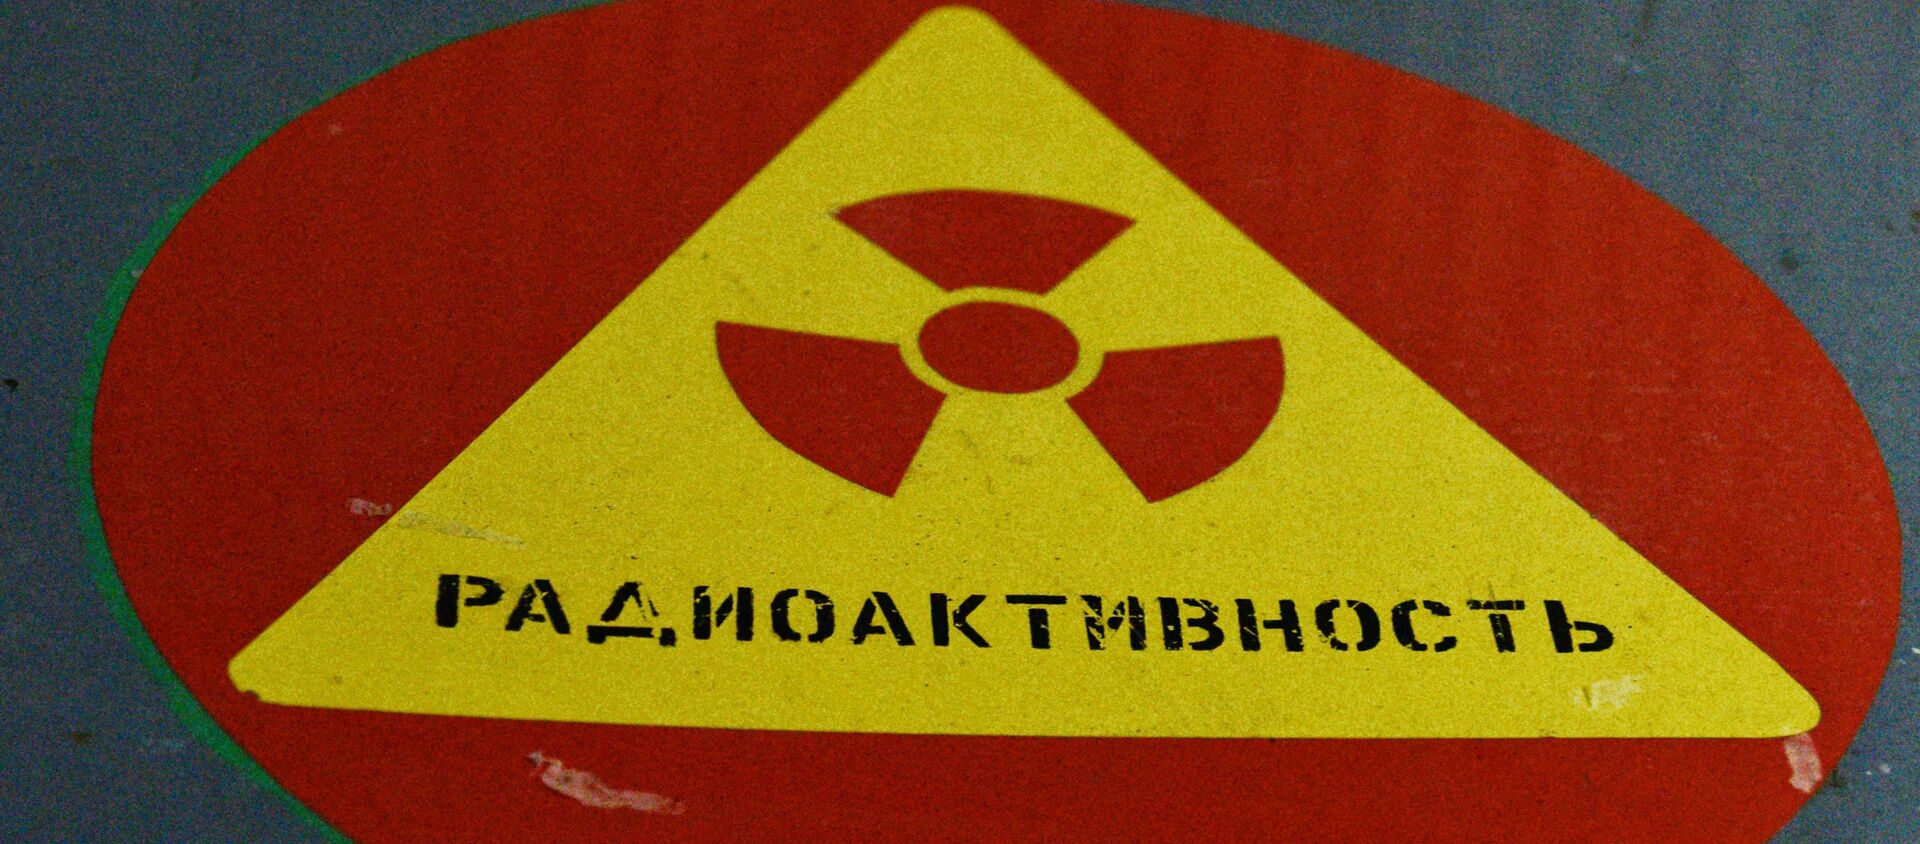 Señal de advertencia de radiactividad en la central nuclear de Chernóbil - Sputnik Mundo, 1920, 09.12.2019